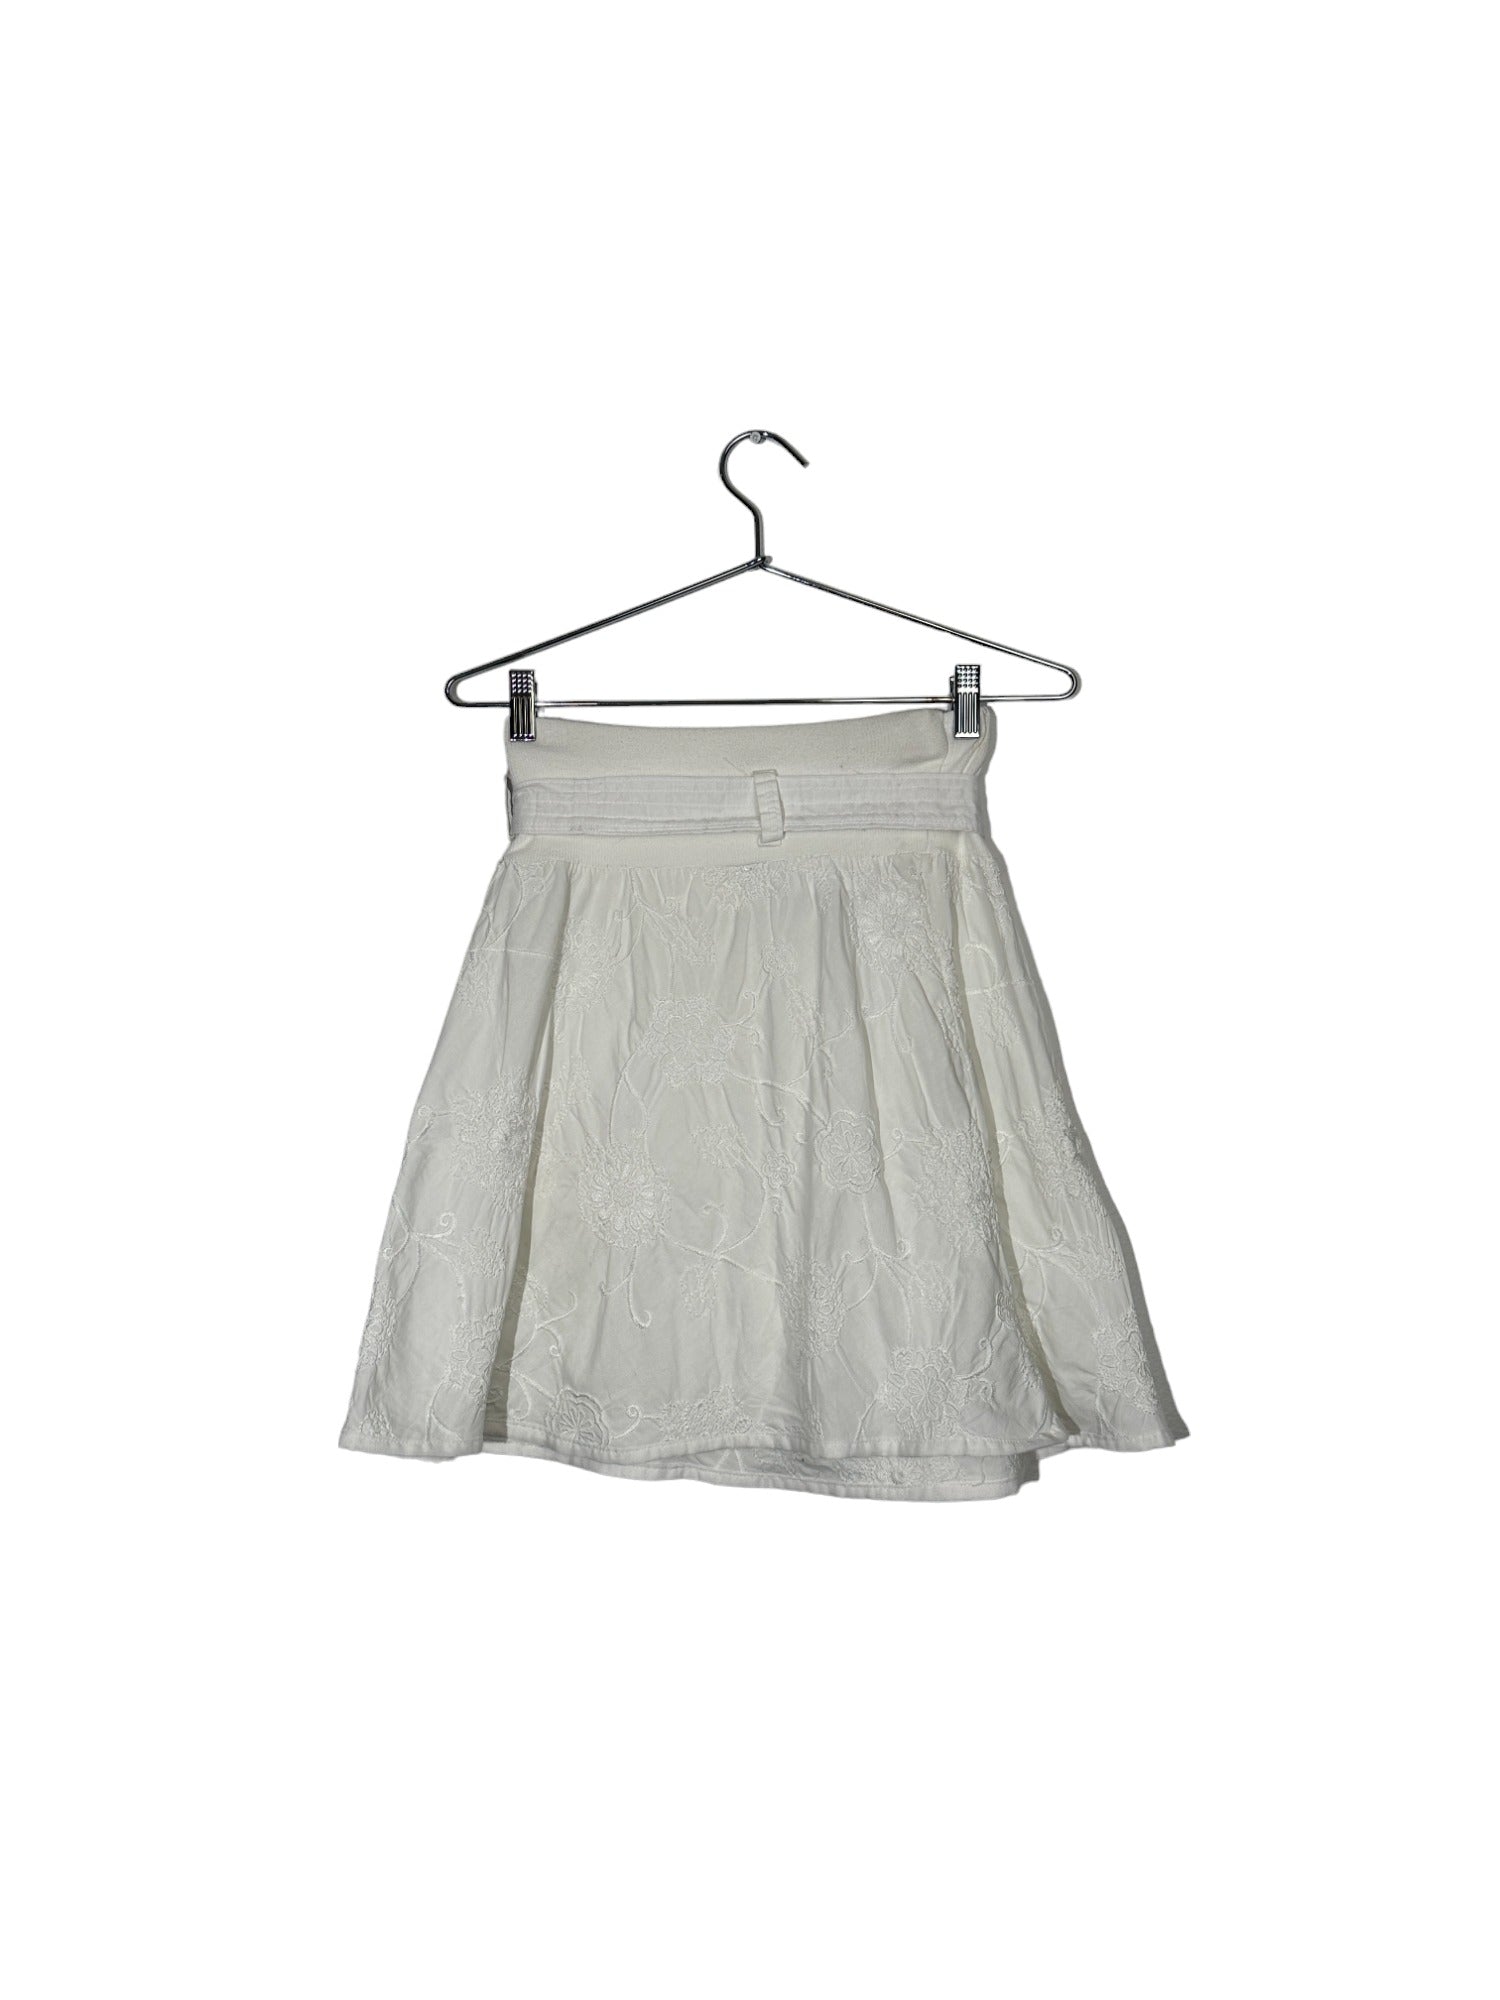 Embroidered White Skirt